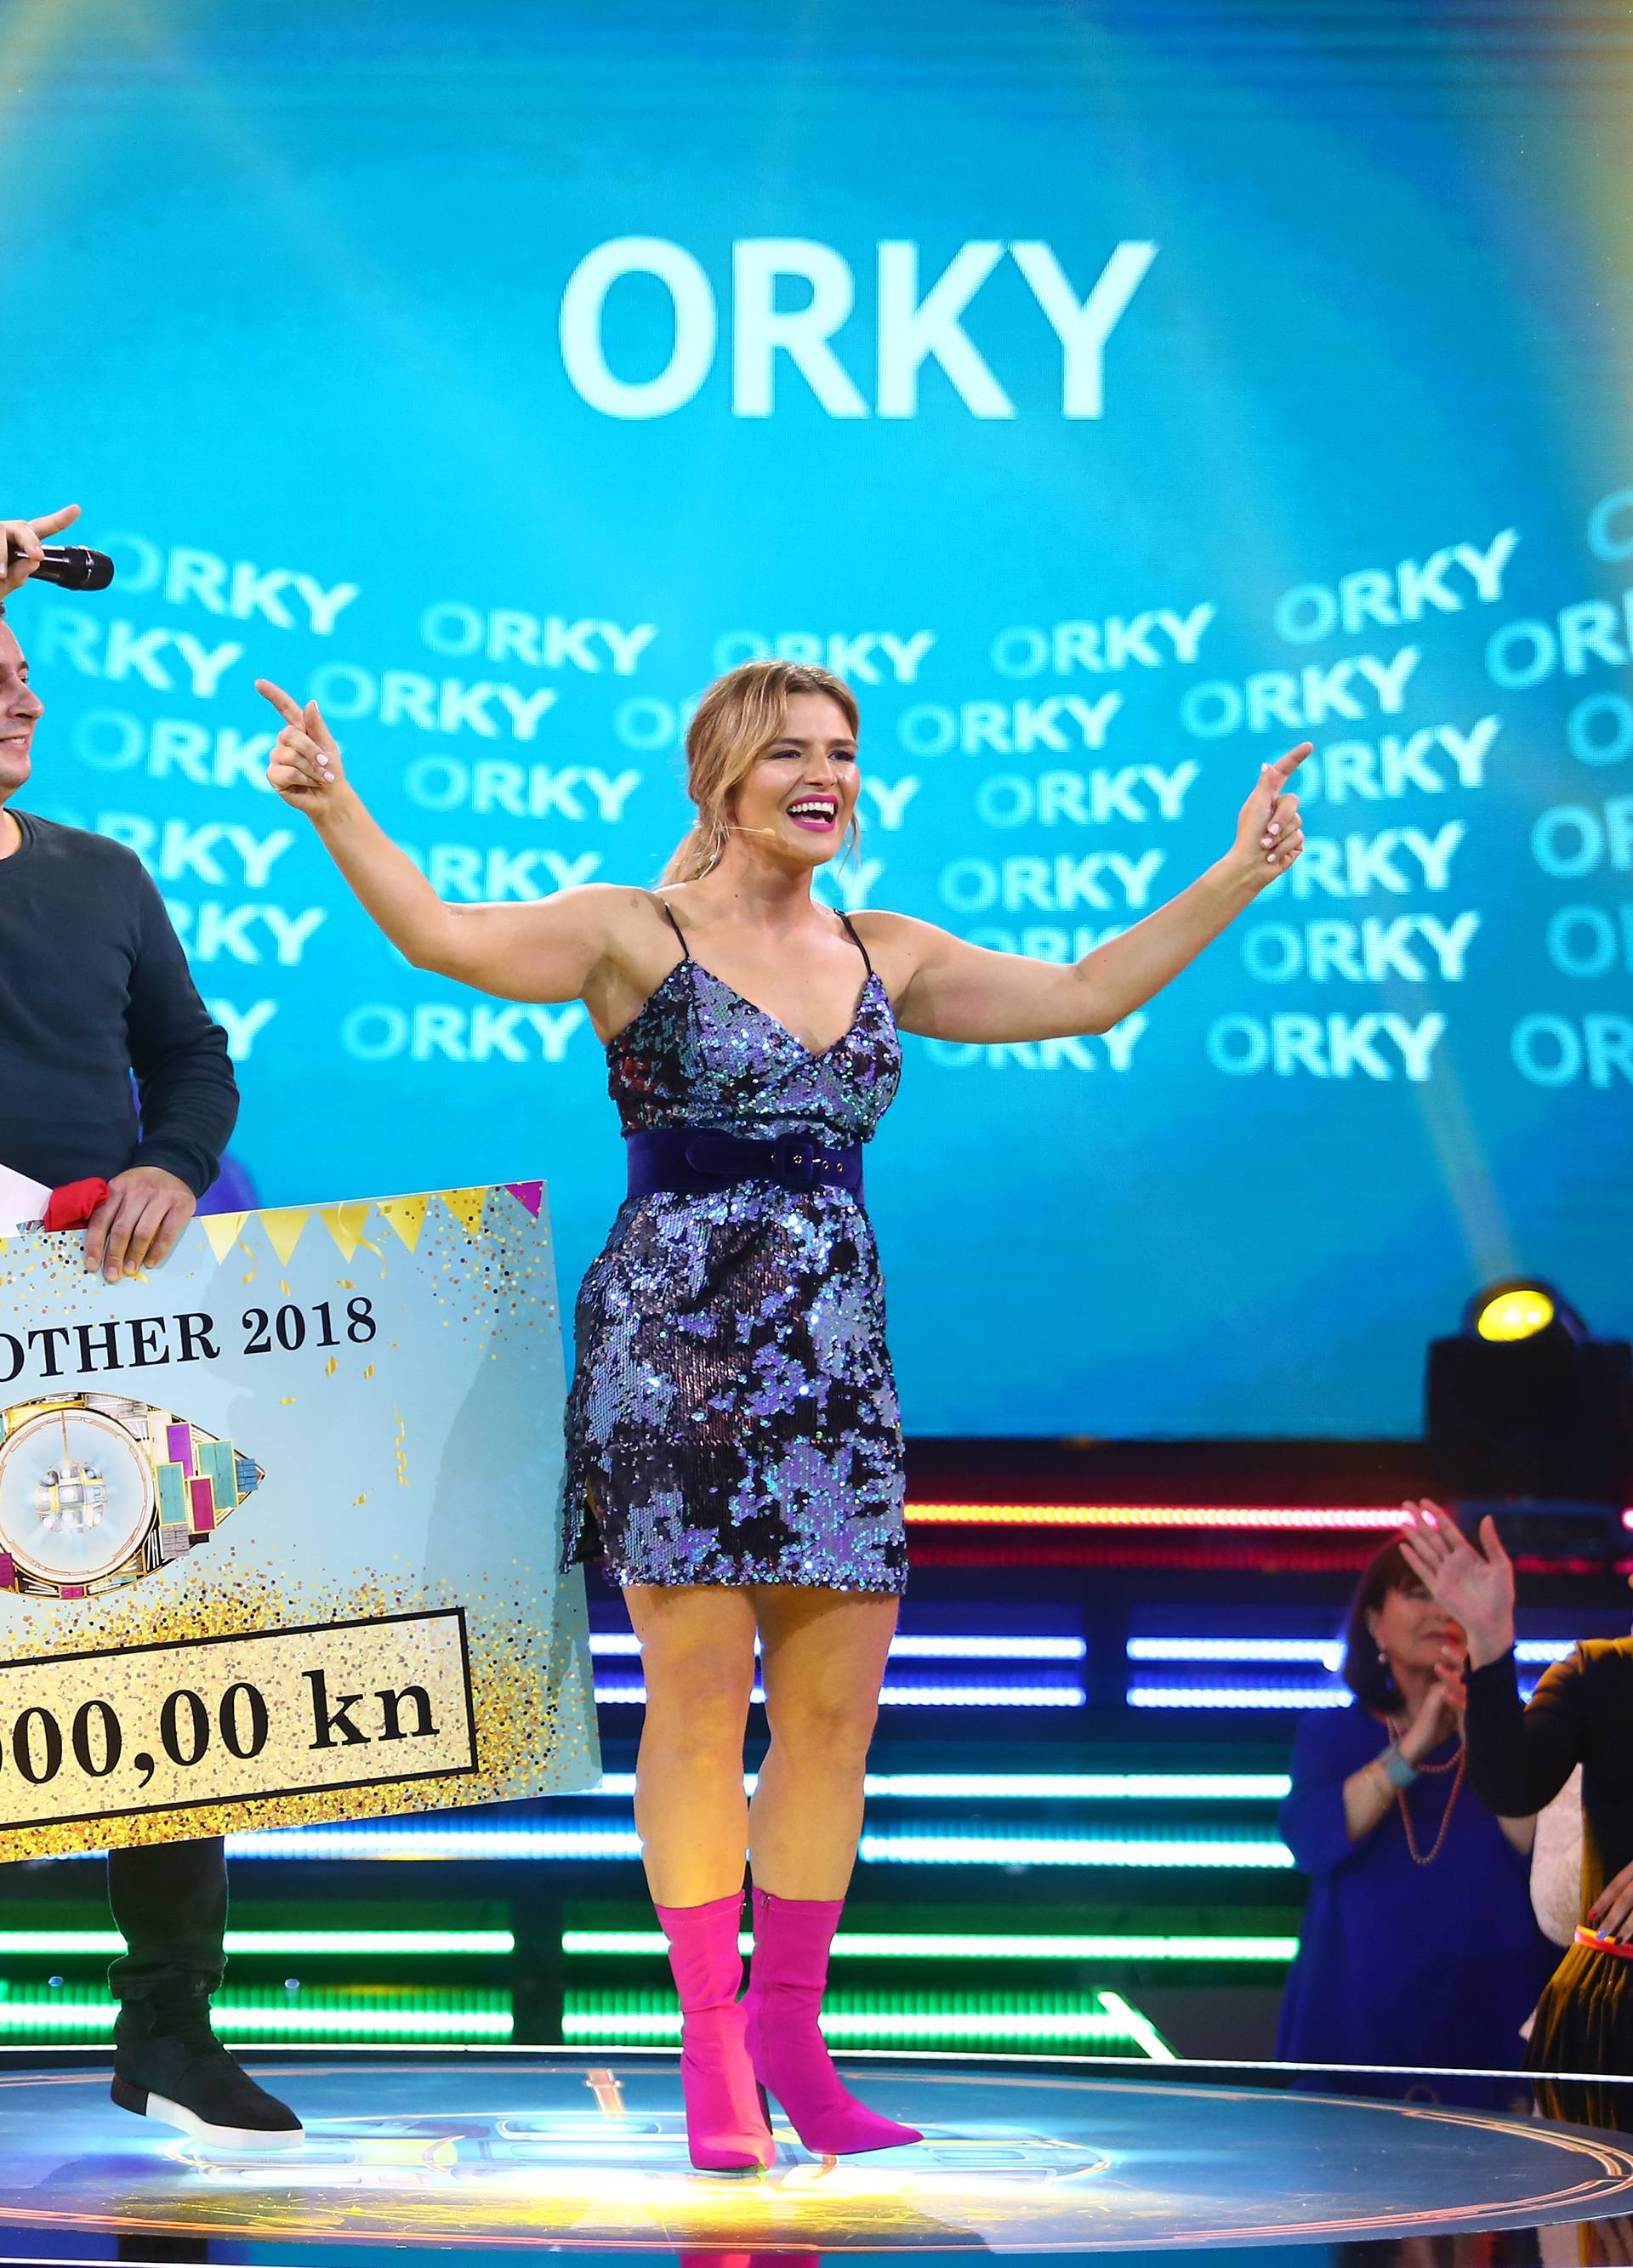 Pobjedu je odnio favorit Orky: Izlazi bogatiji za 371.000 kuna